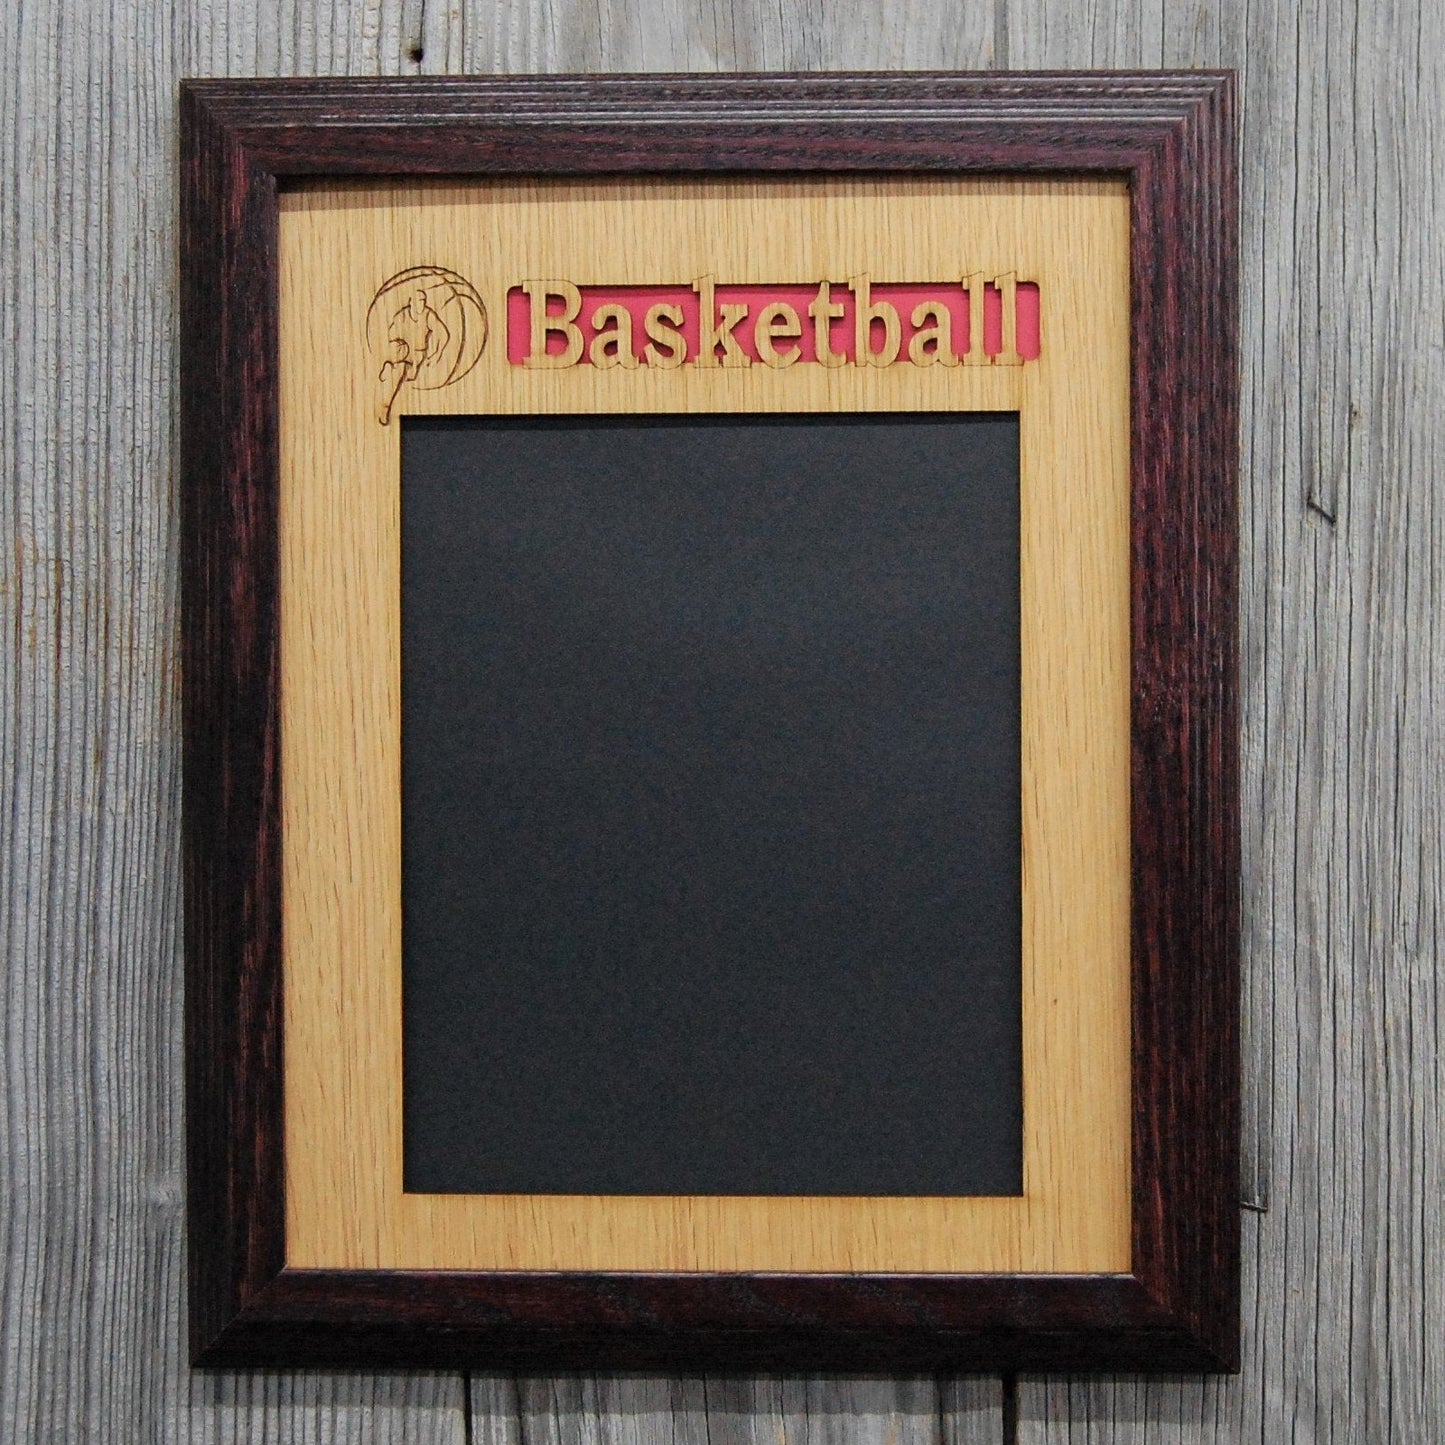 Basketball Picture Frame - Basketball Picture Frame - Legacy Images - Picture Frames - Legacy Images - Picture Frames